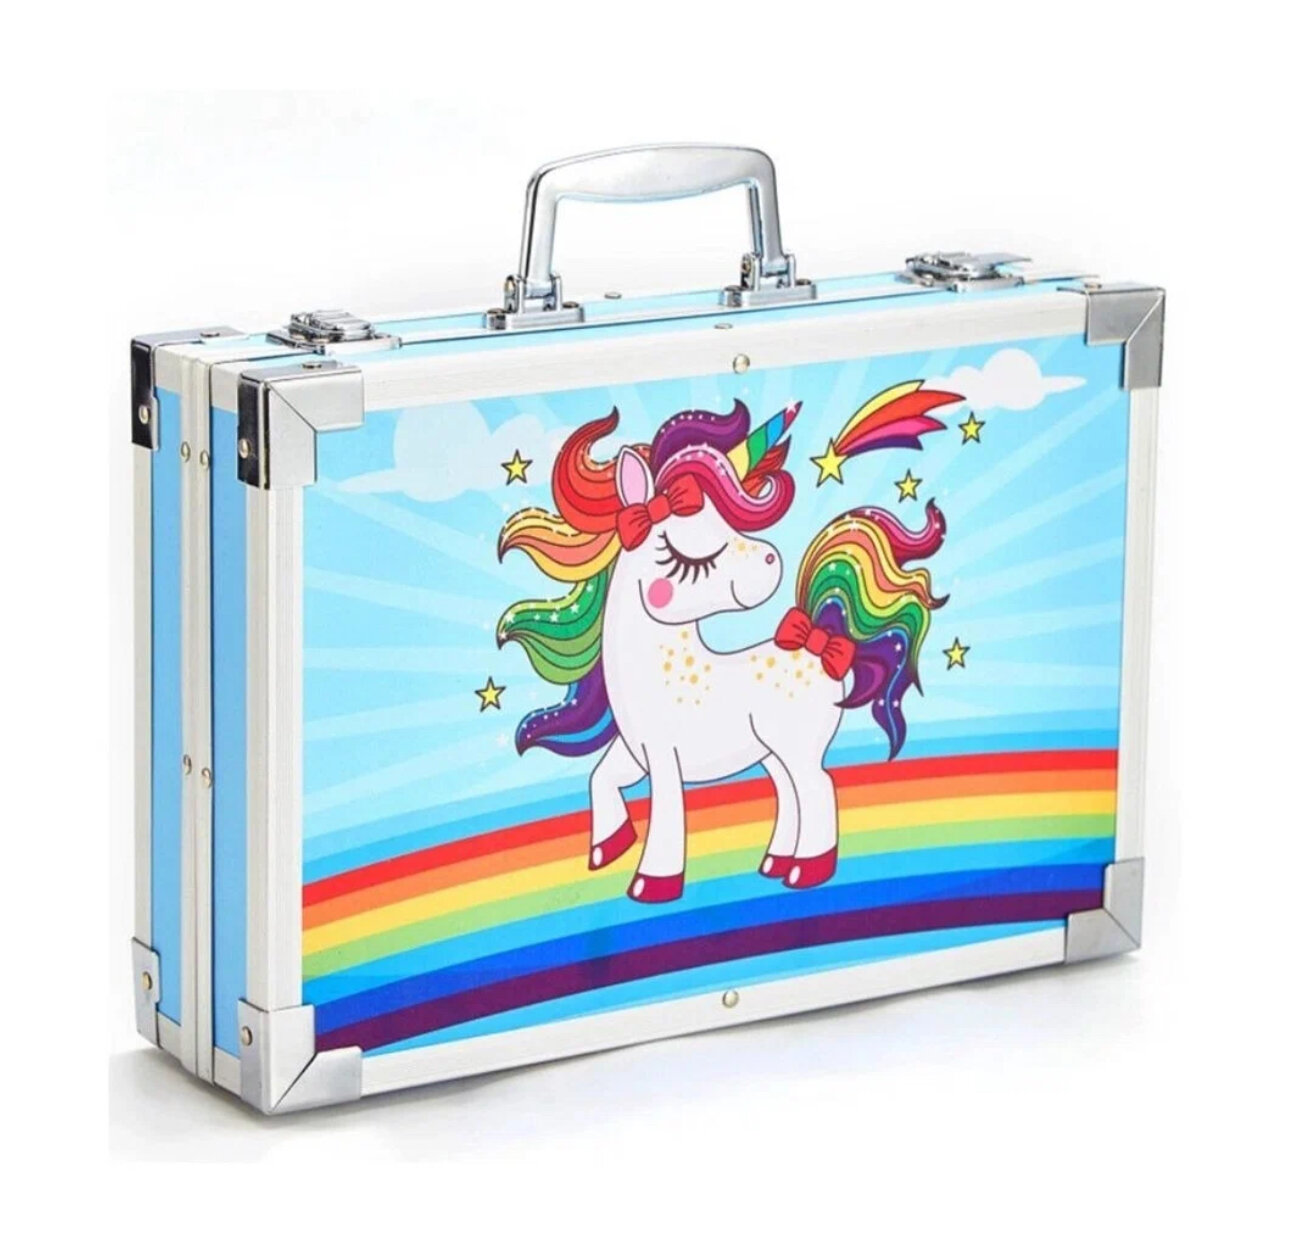 Набор для рисования и творчества в чемодане Единорог, 145 предметов (Пони голубой)